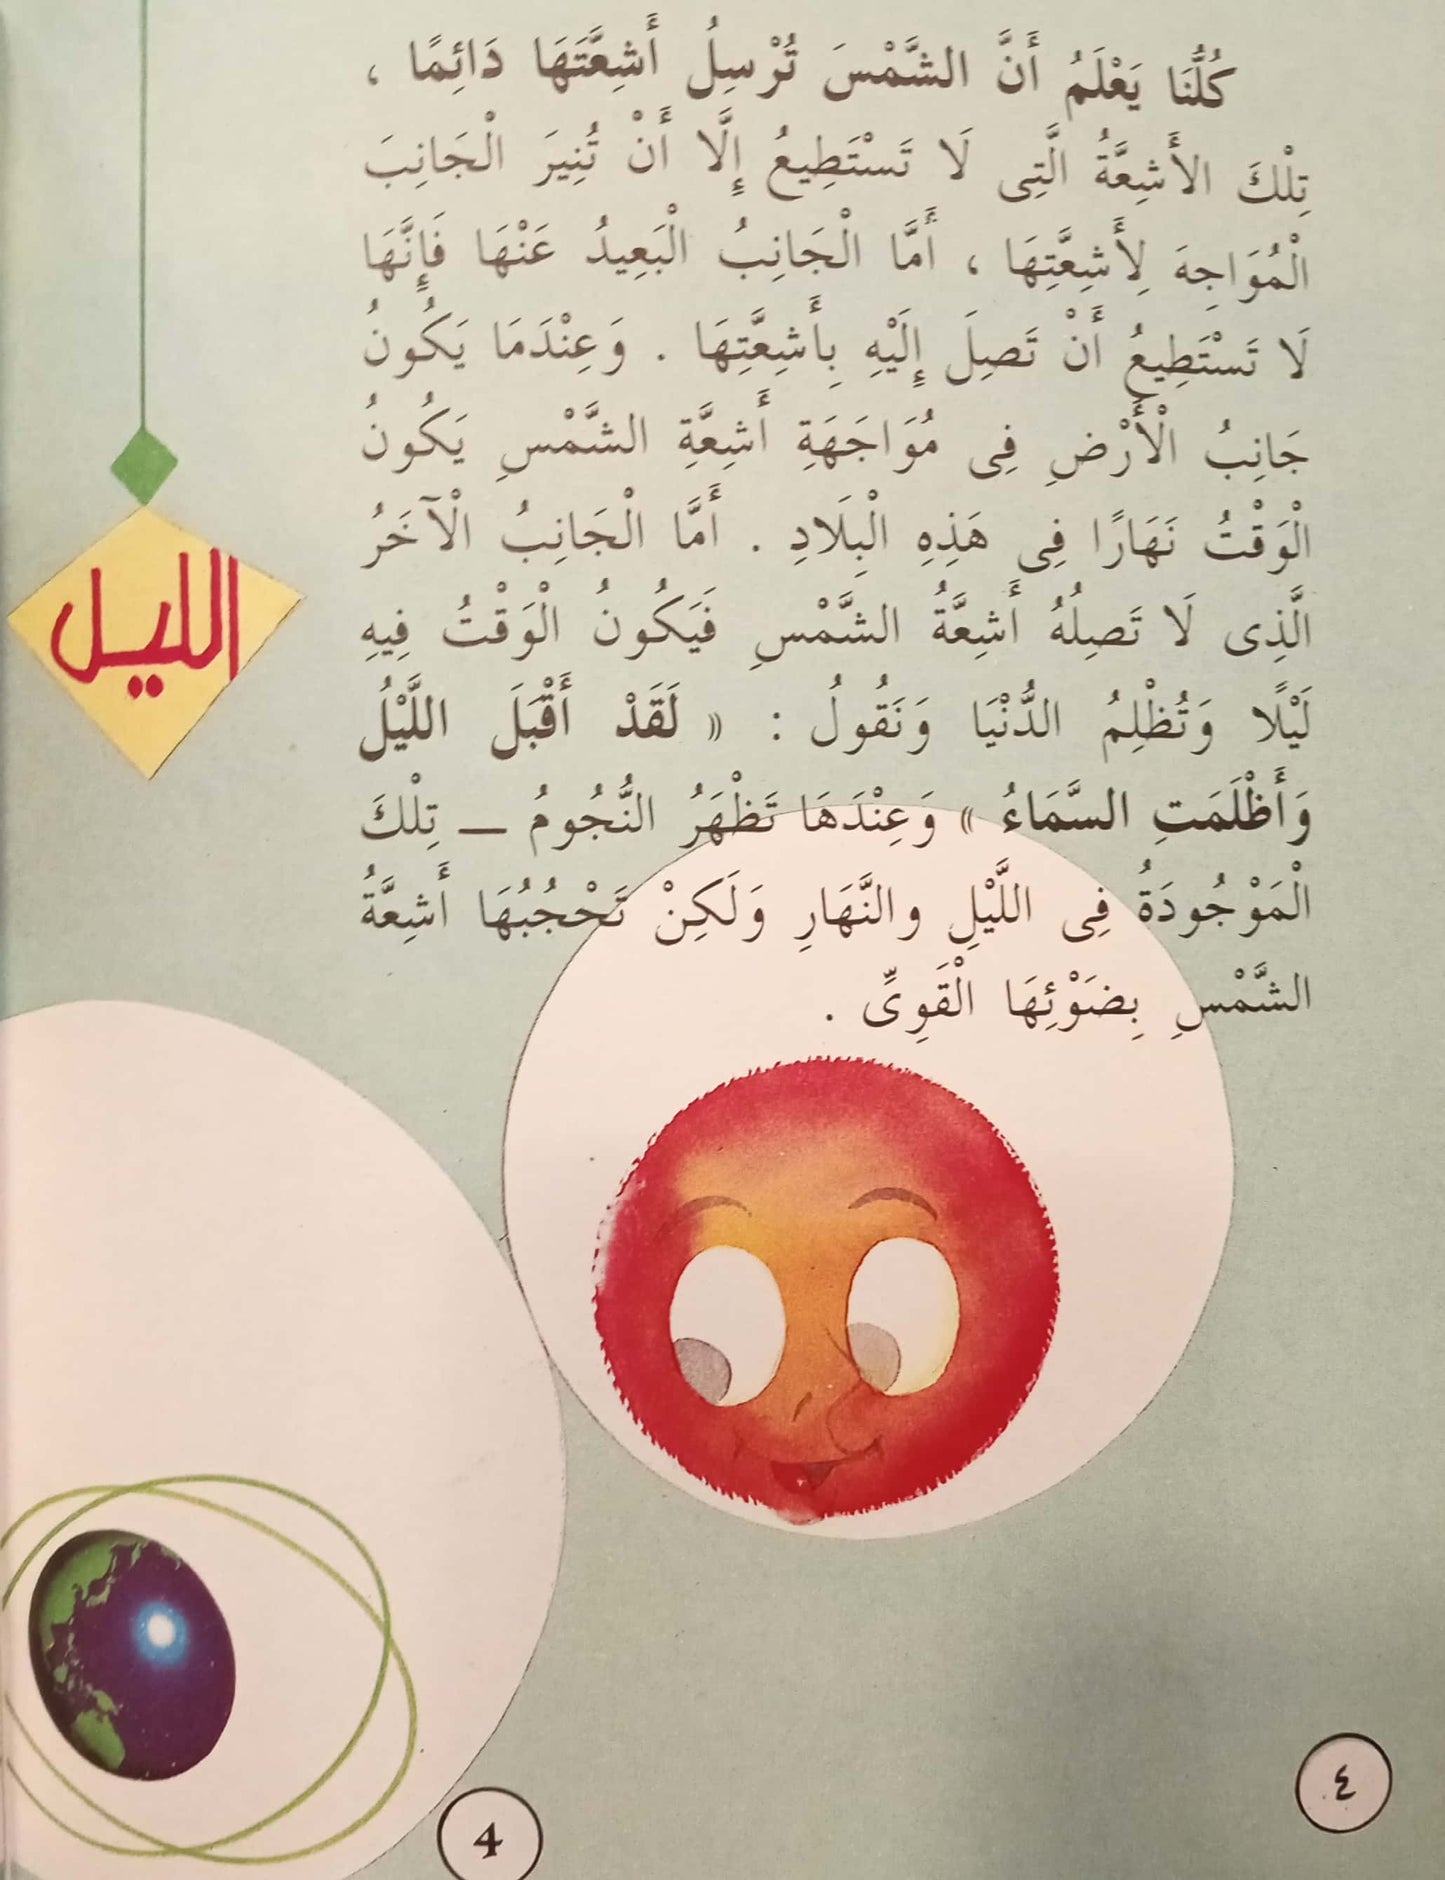 الليل - 24 السماوات والأرض وما بينهما سلسلة علوم جاء ذكرها في القرآن